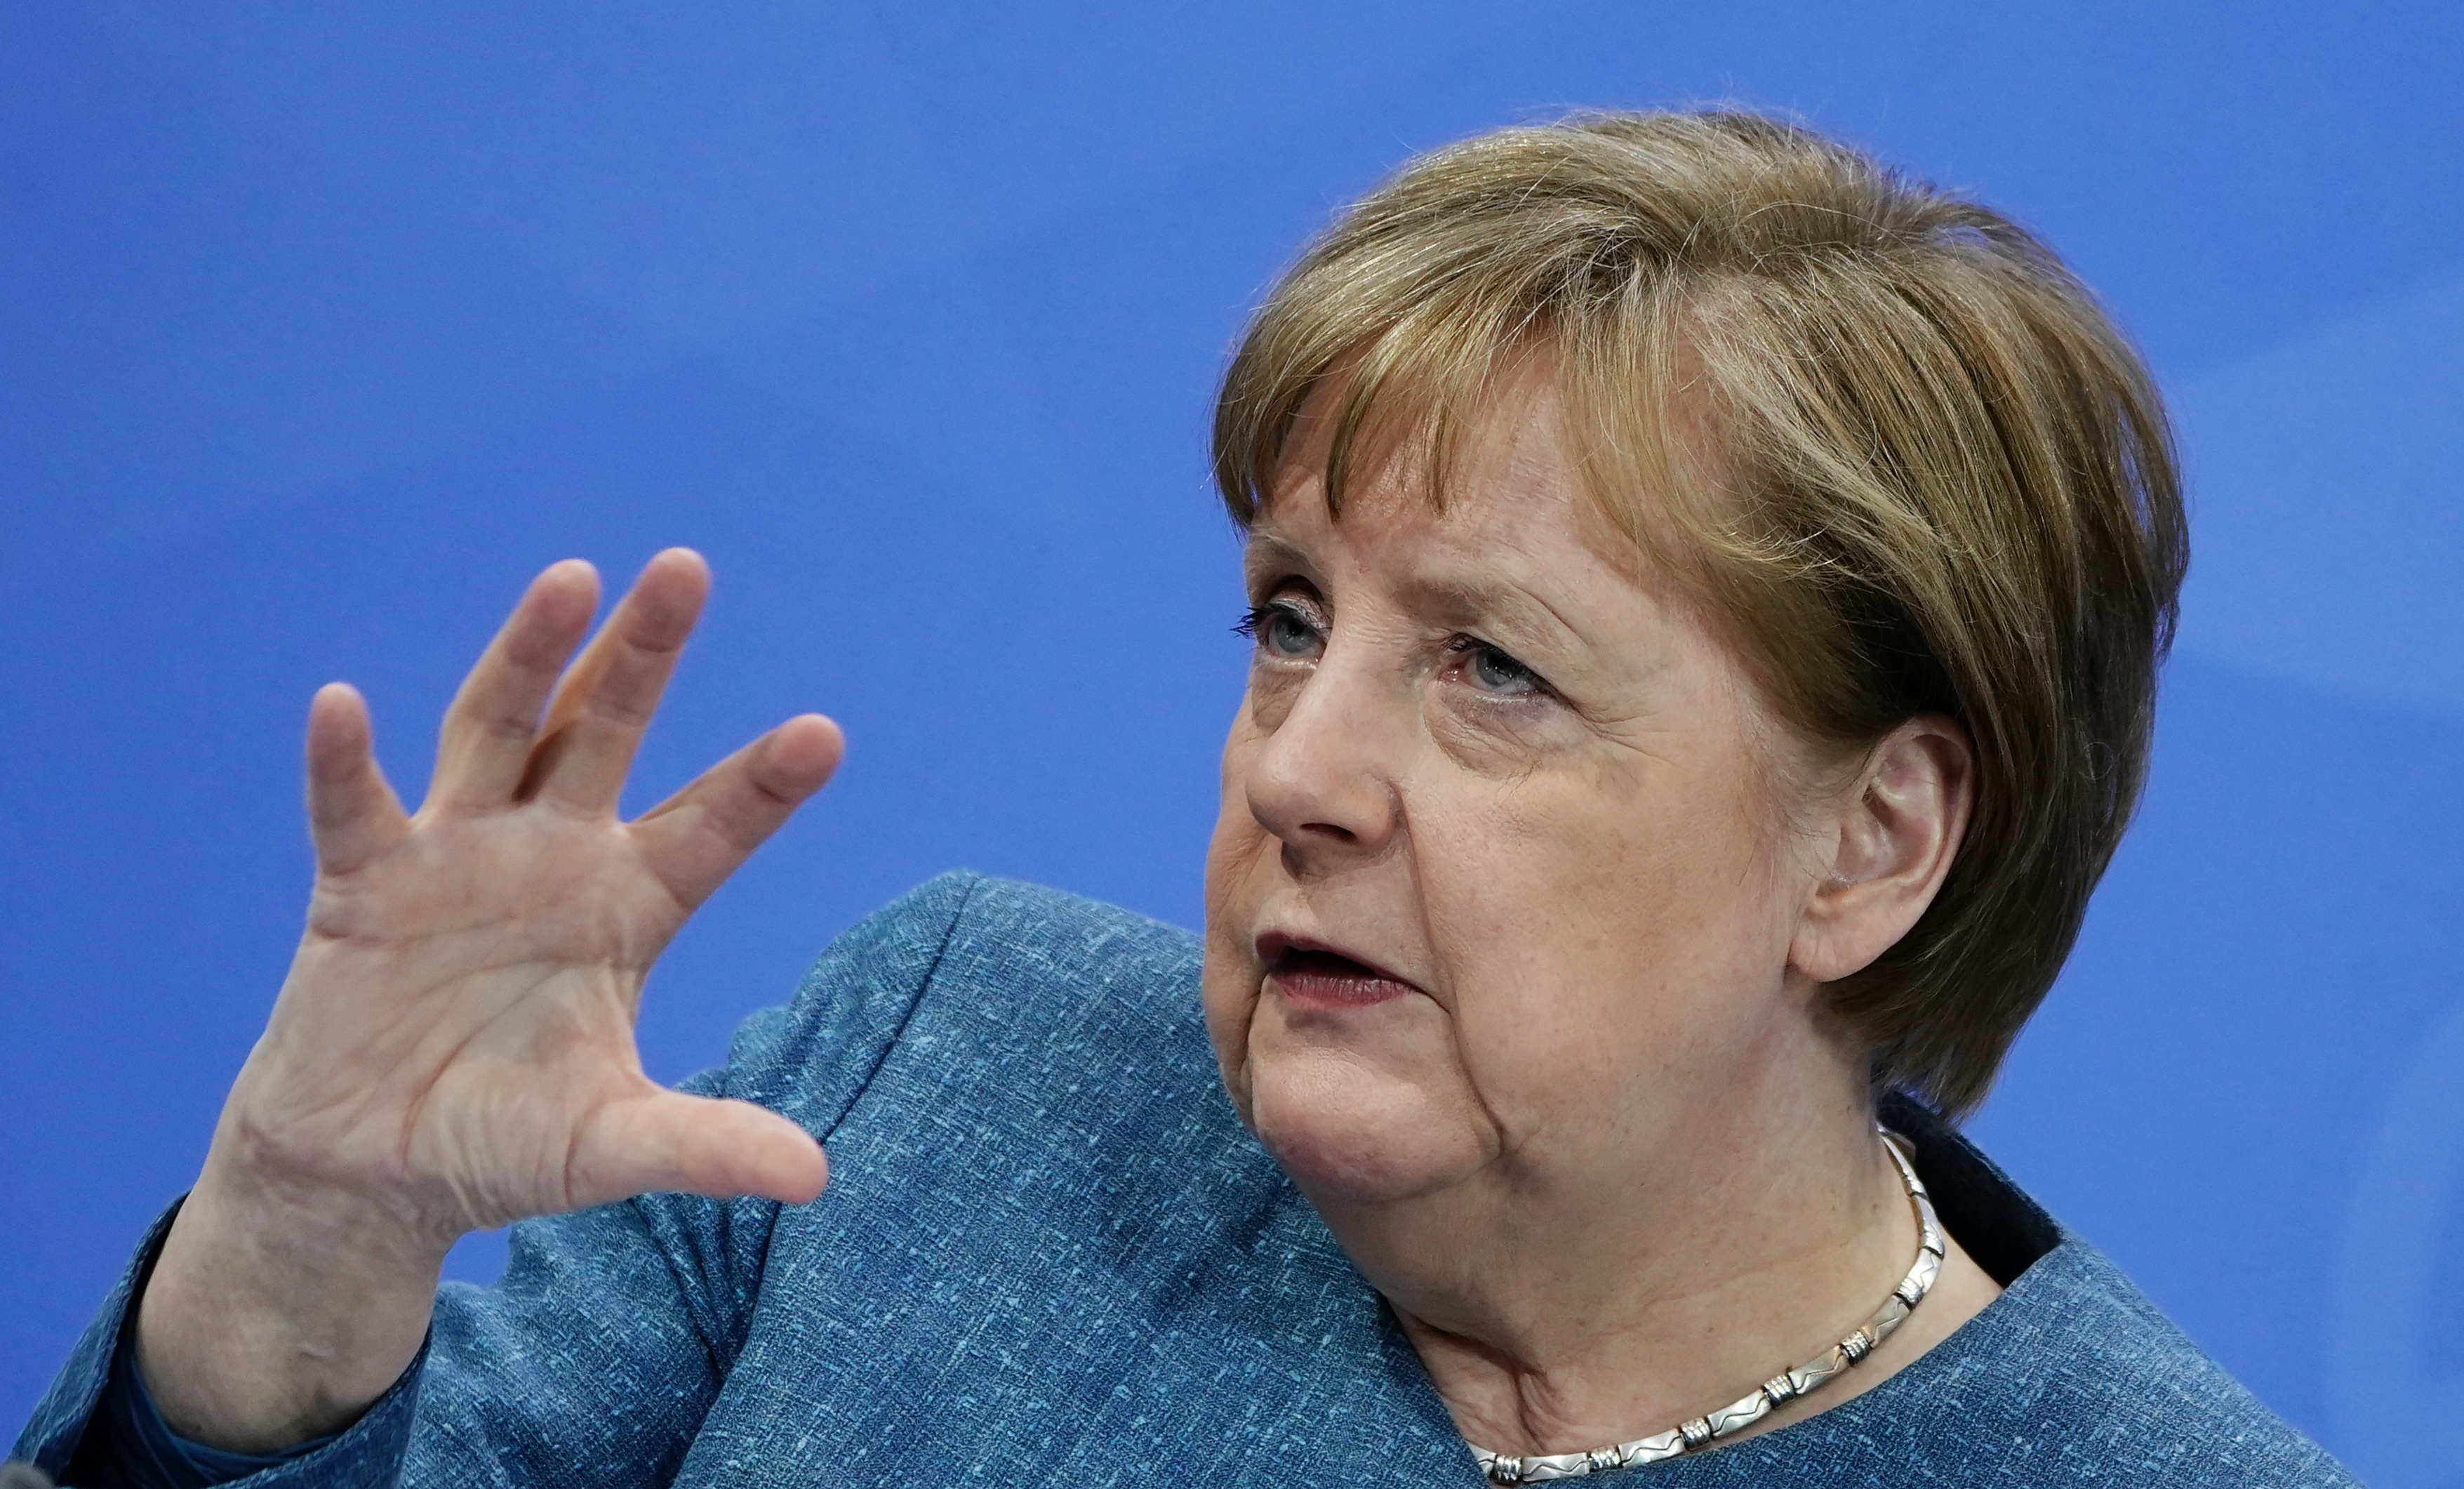 La Canciller alemana, Angela Merkel, se retira de la política tras 16 años en el poder. Condujo con pericia a su país y se transformó en la líder europea más importante.  Michael Kappeler/Pool via REUTERS